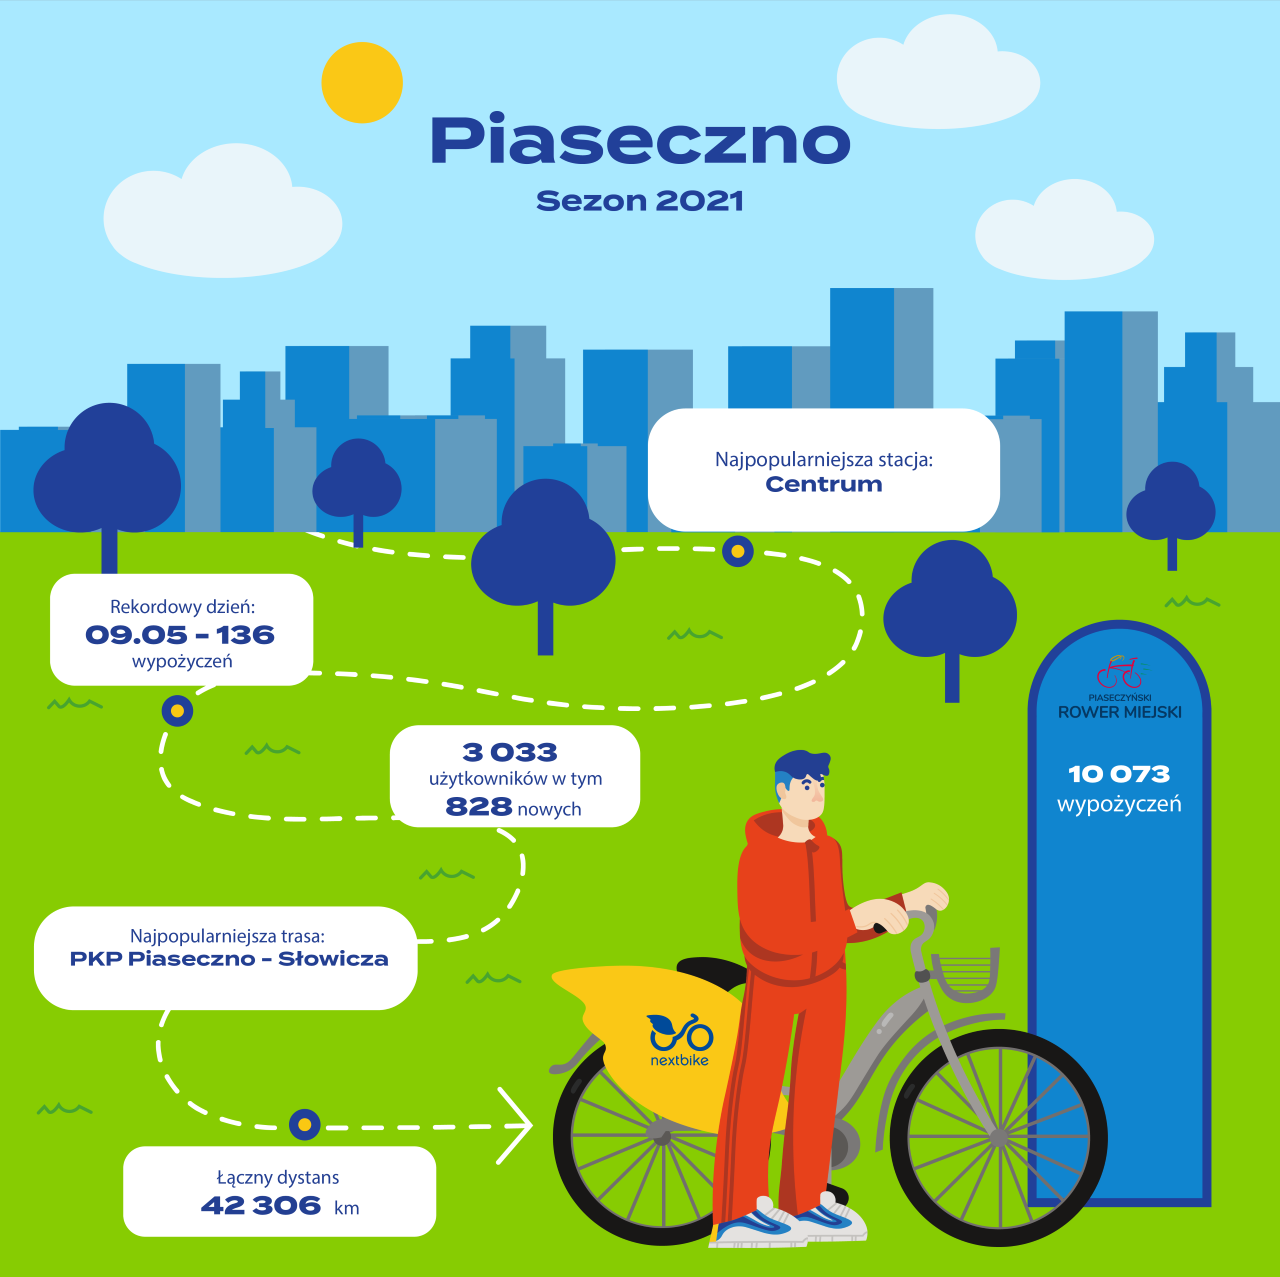 Ilustracja Piaseczno rower miejski - podsumowanie sezonu 2021